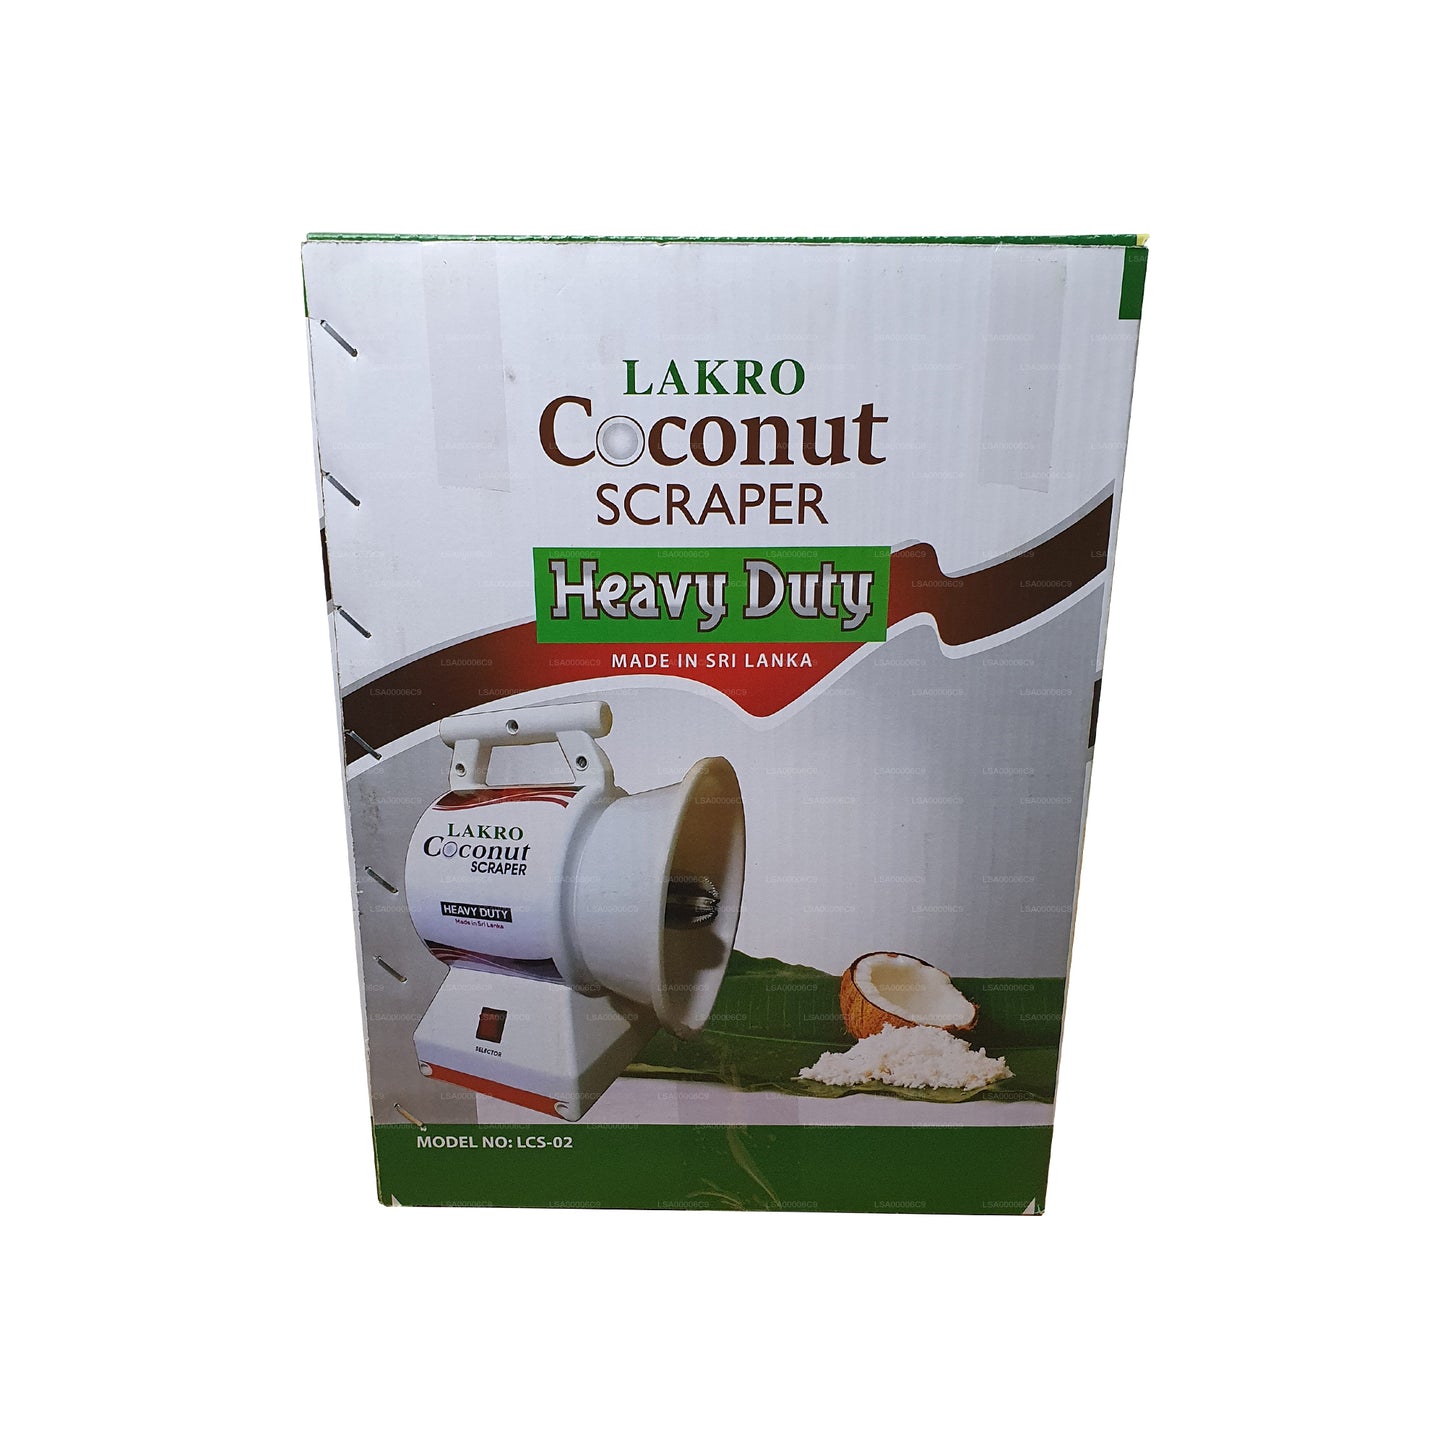 Сверхмощная машина для скребка кокосовых орехов Lakro (LCS-007)